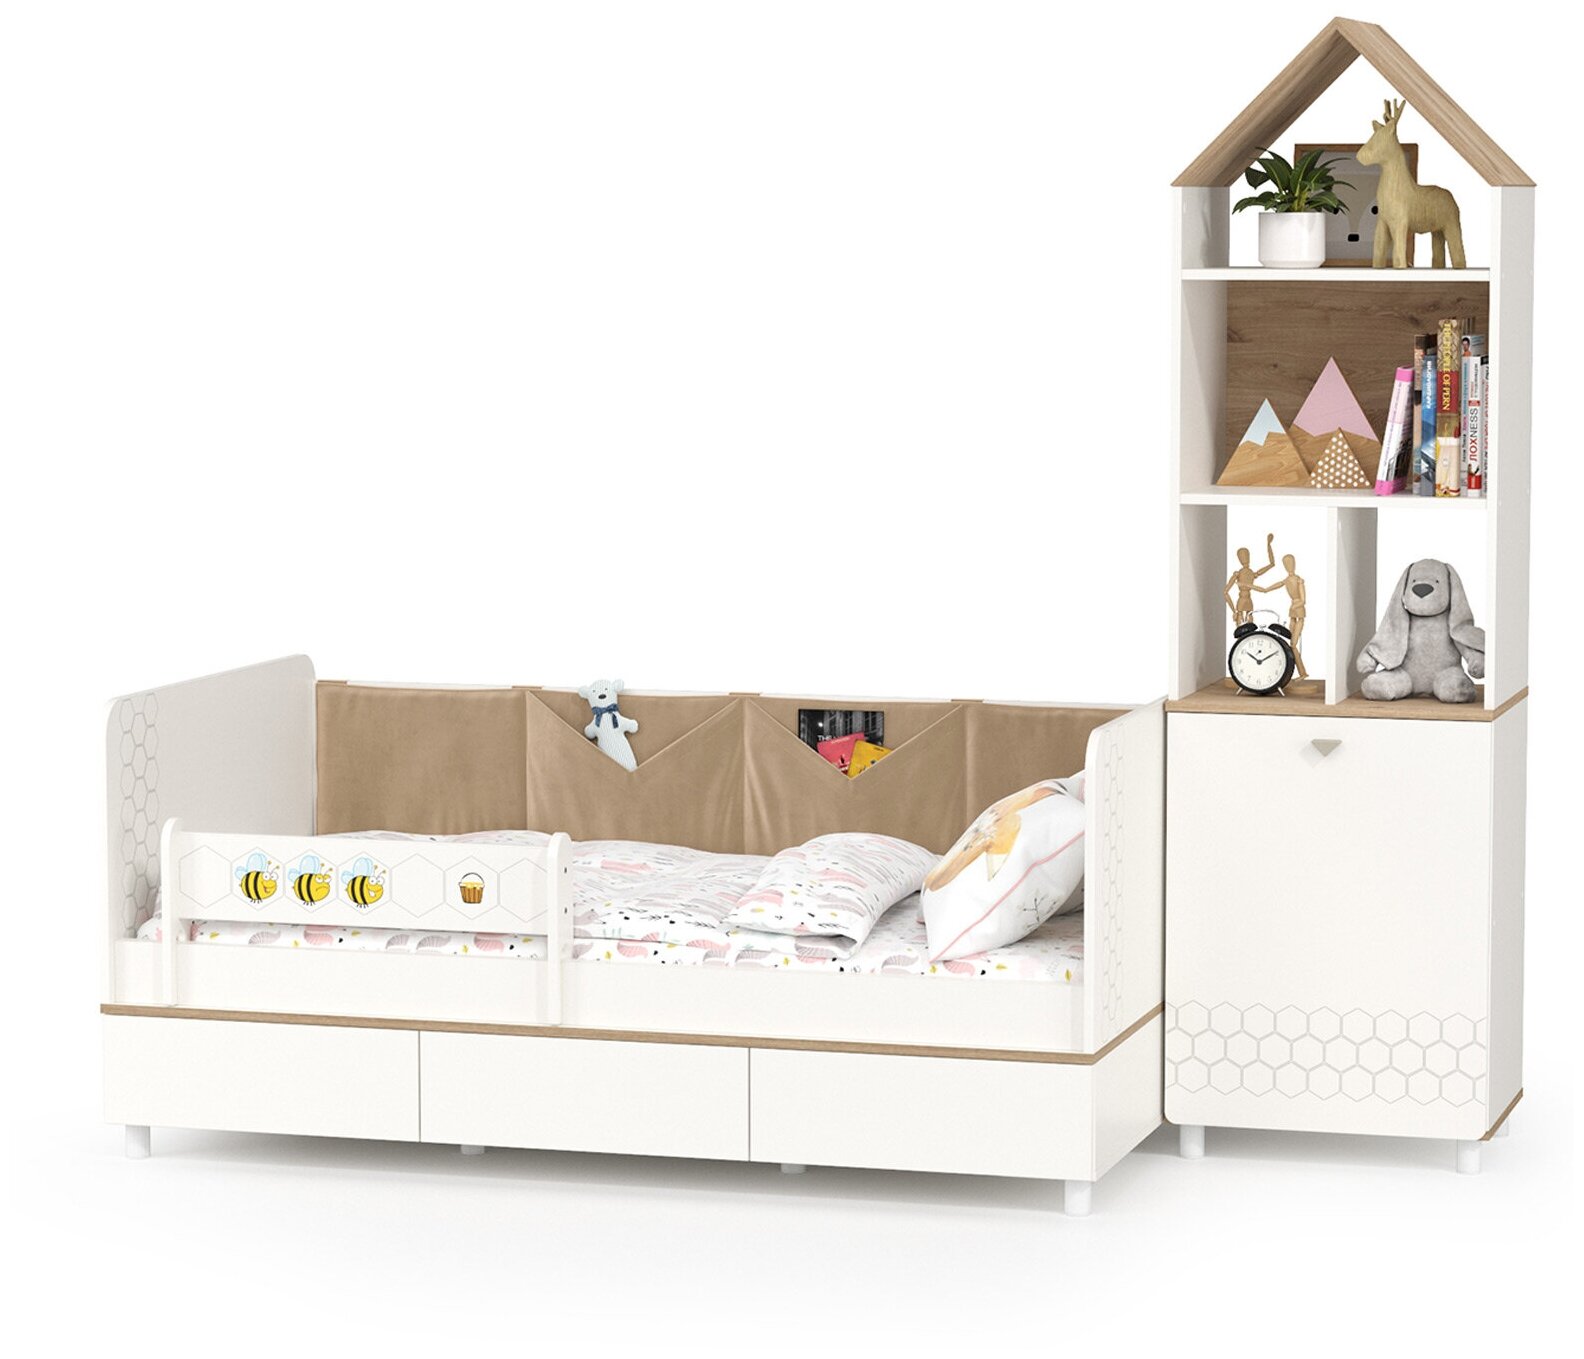 Кровать детская с тремя ящикаи и открытый детский стеллаж Эйп, цвет белый/дуб белый, спальное место 800х1600 мм, без матраса